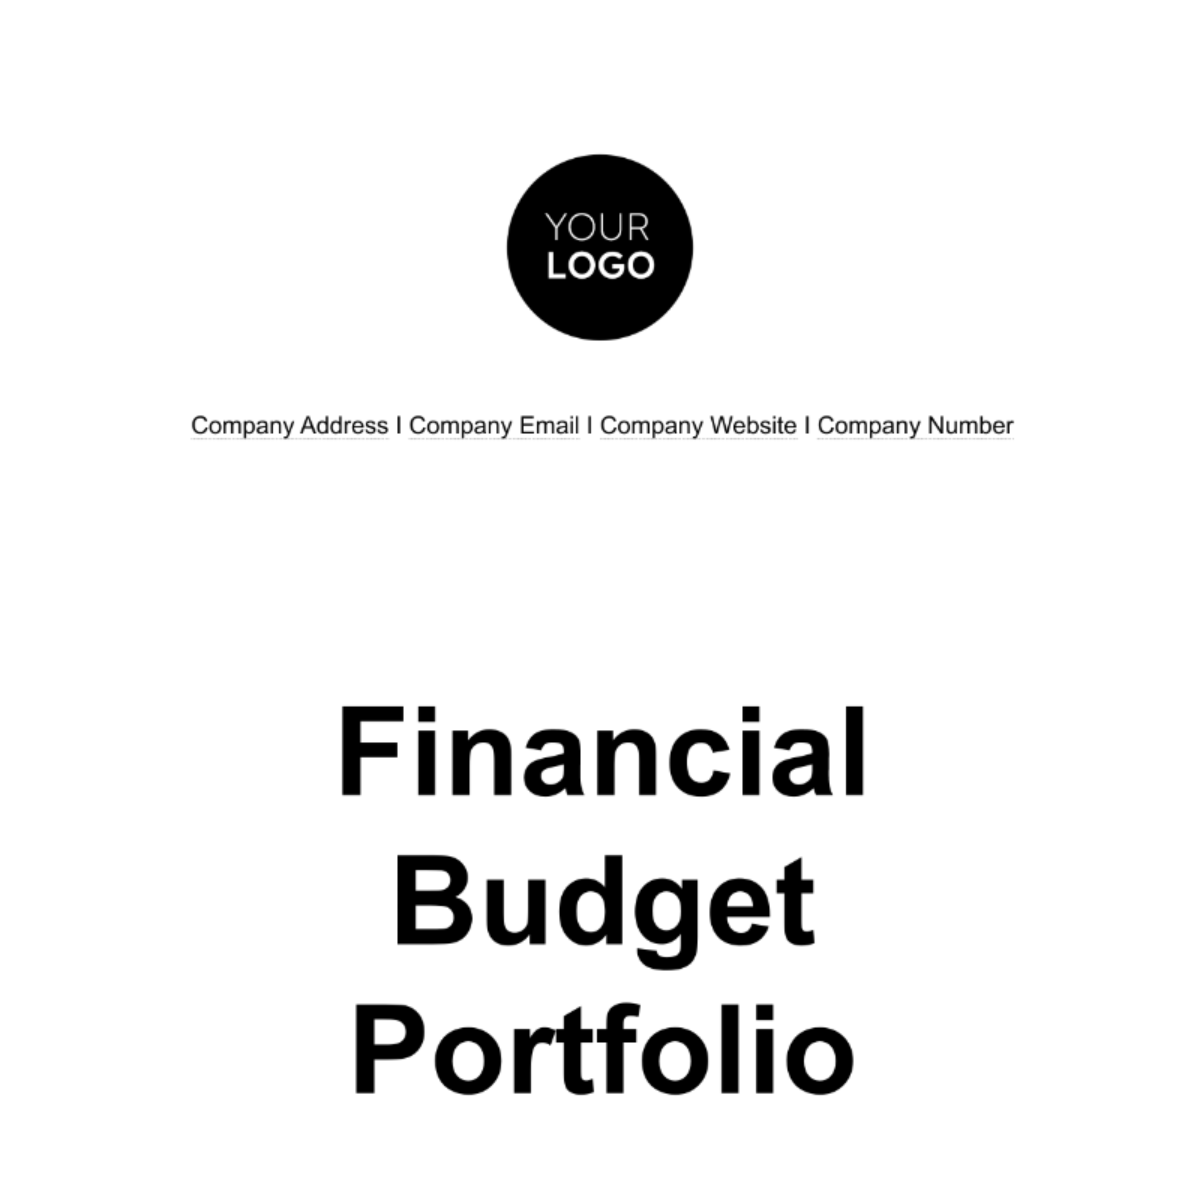 Free Financial Budget Portfolio Template